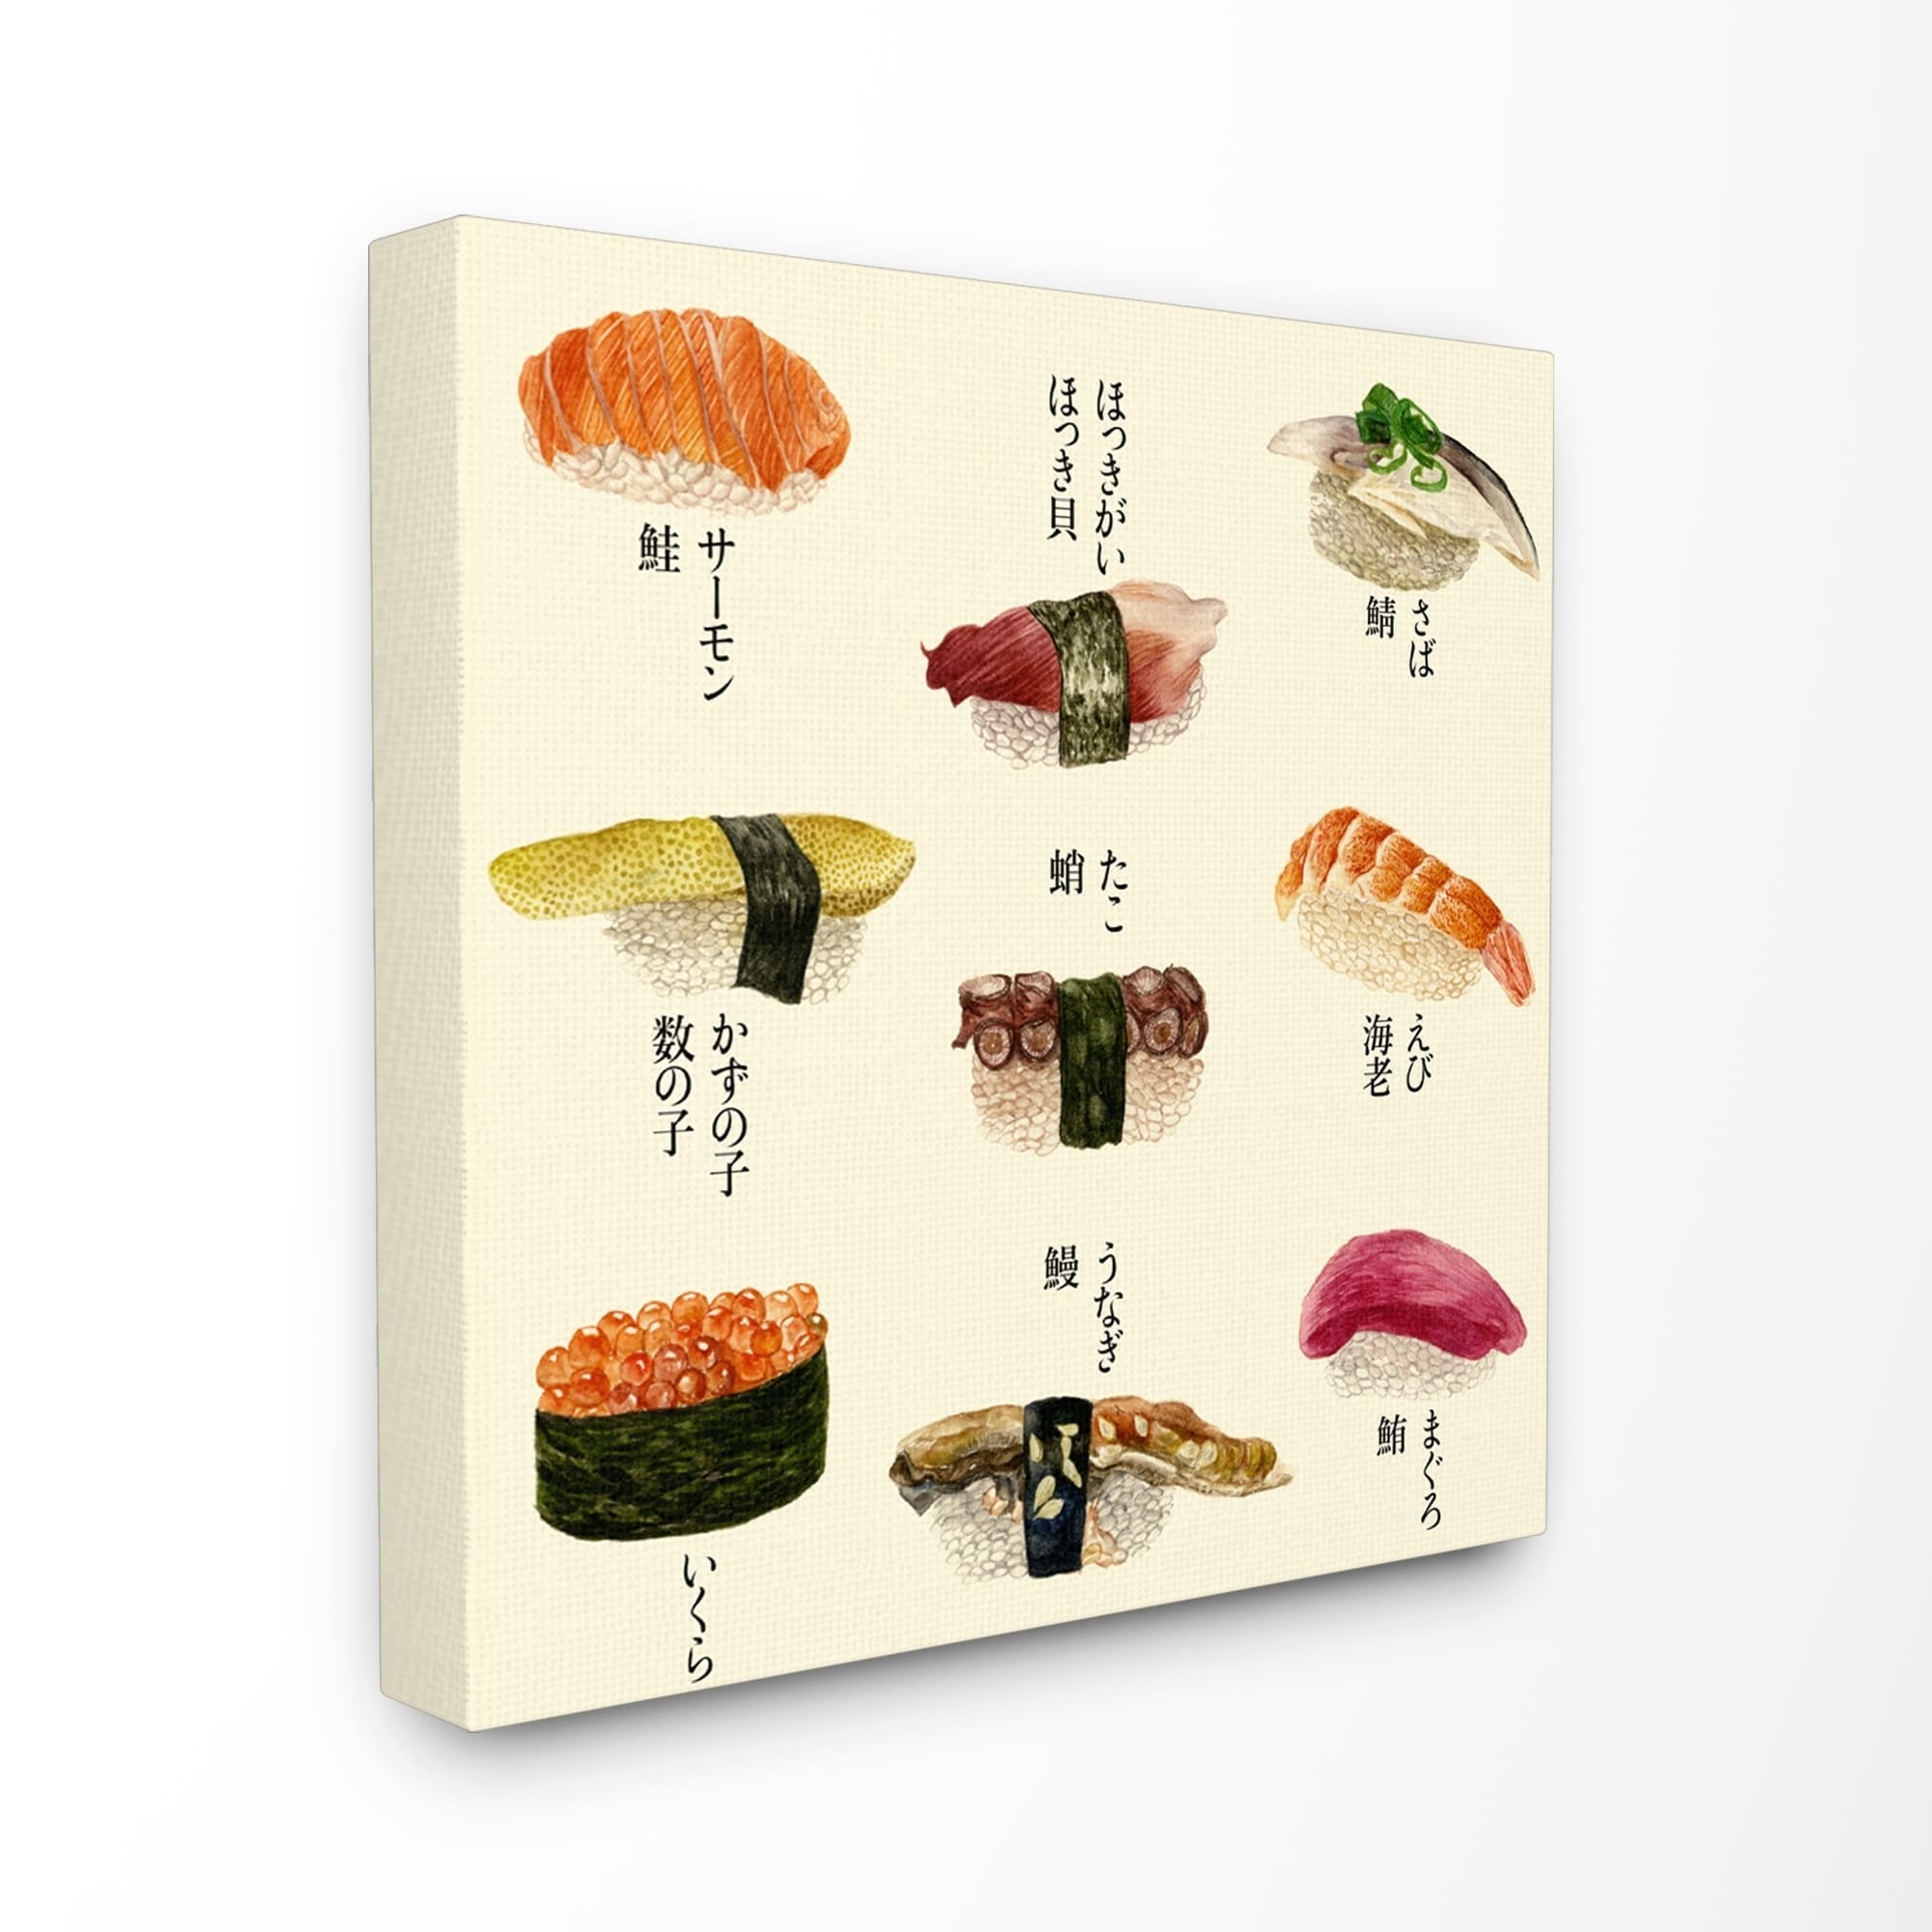 Sushi Chart